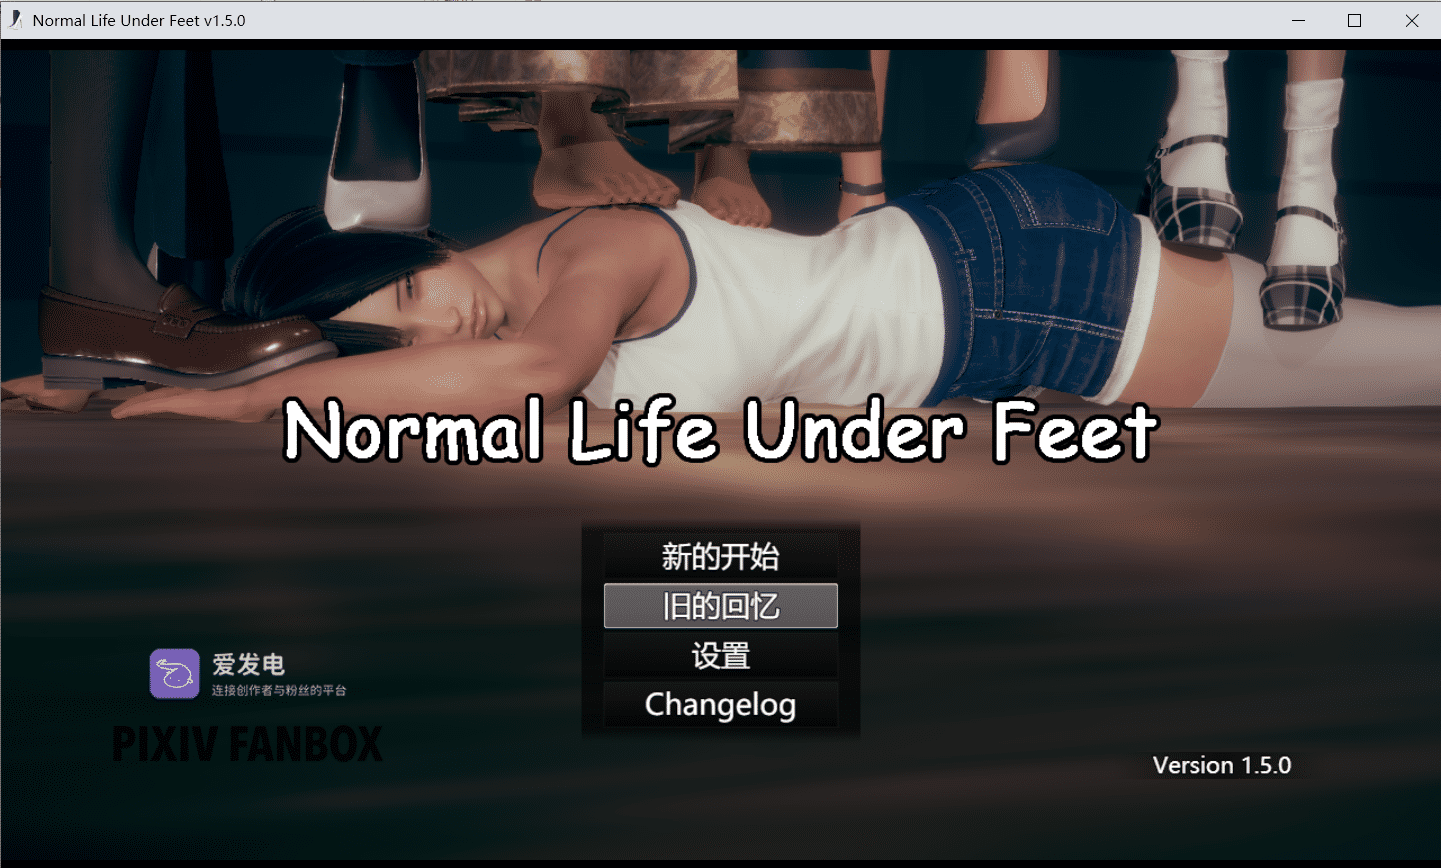 【RPG/官中/抖M】正常的脚下生活 Normal Life Under Feet V1.5.0 官方中文版【更新/PC/2.5G】-小皮ACG-二次元资源分享